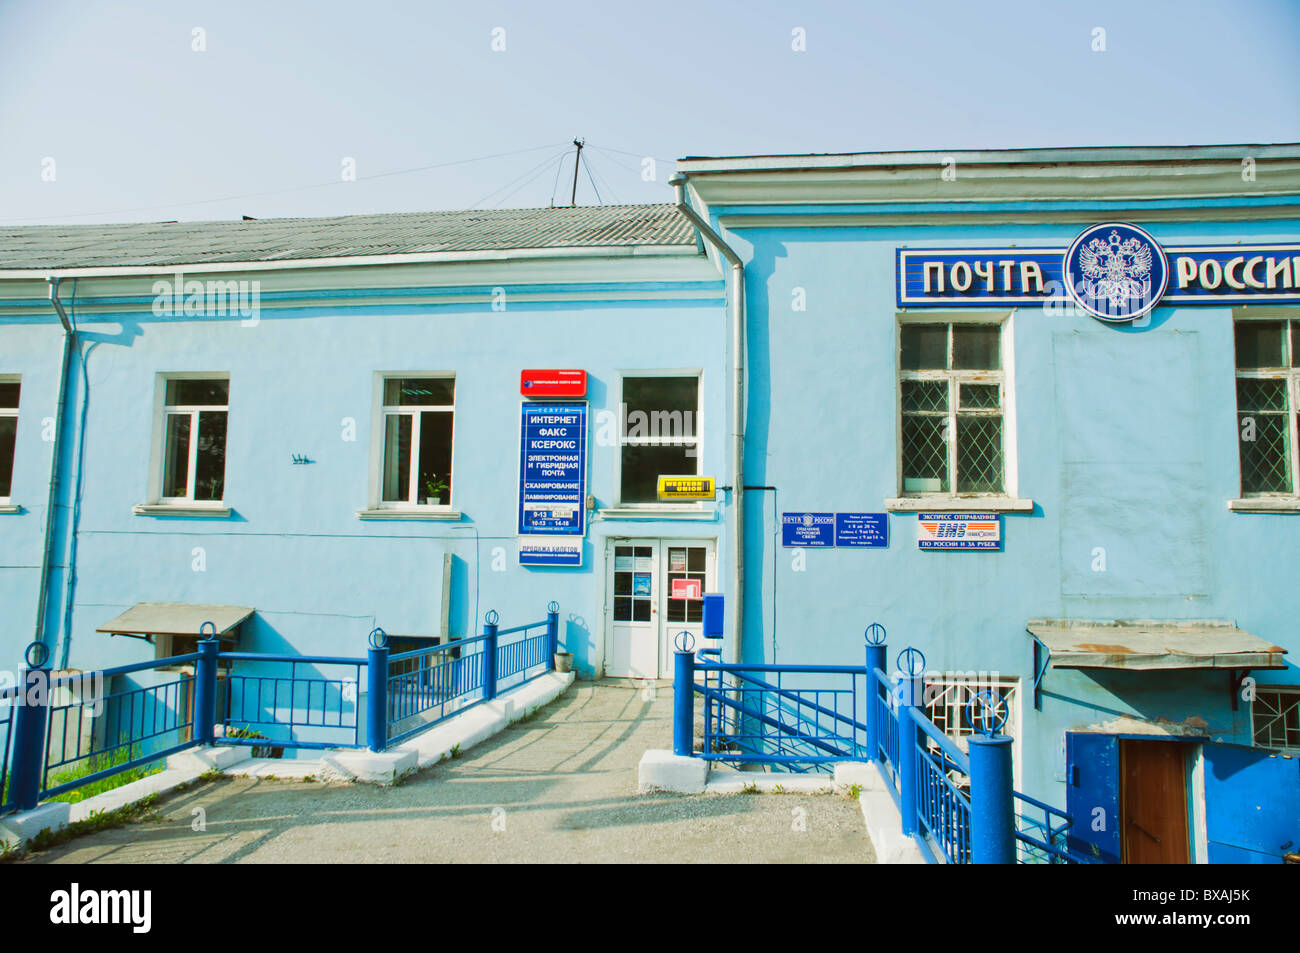 Le bureau de poste central la ville nakhodka Russie Banque D'Images